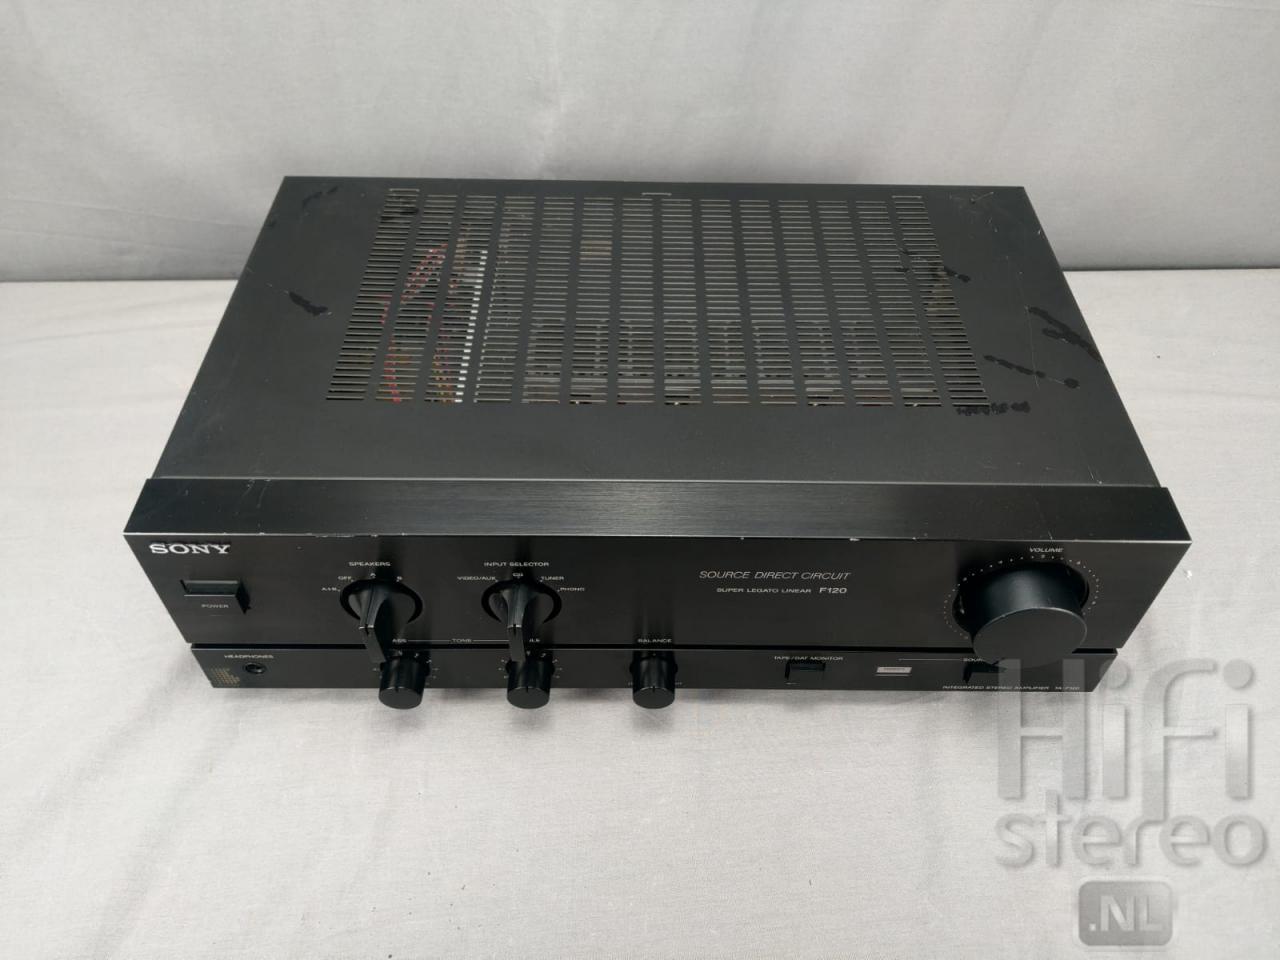 mengsel Tante resterend Sony TA-F120A versterker te koop op hifi stereo.nl